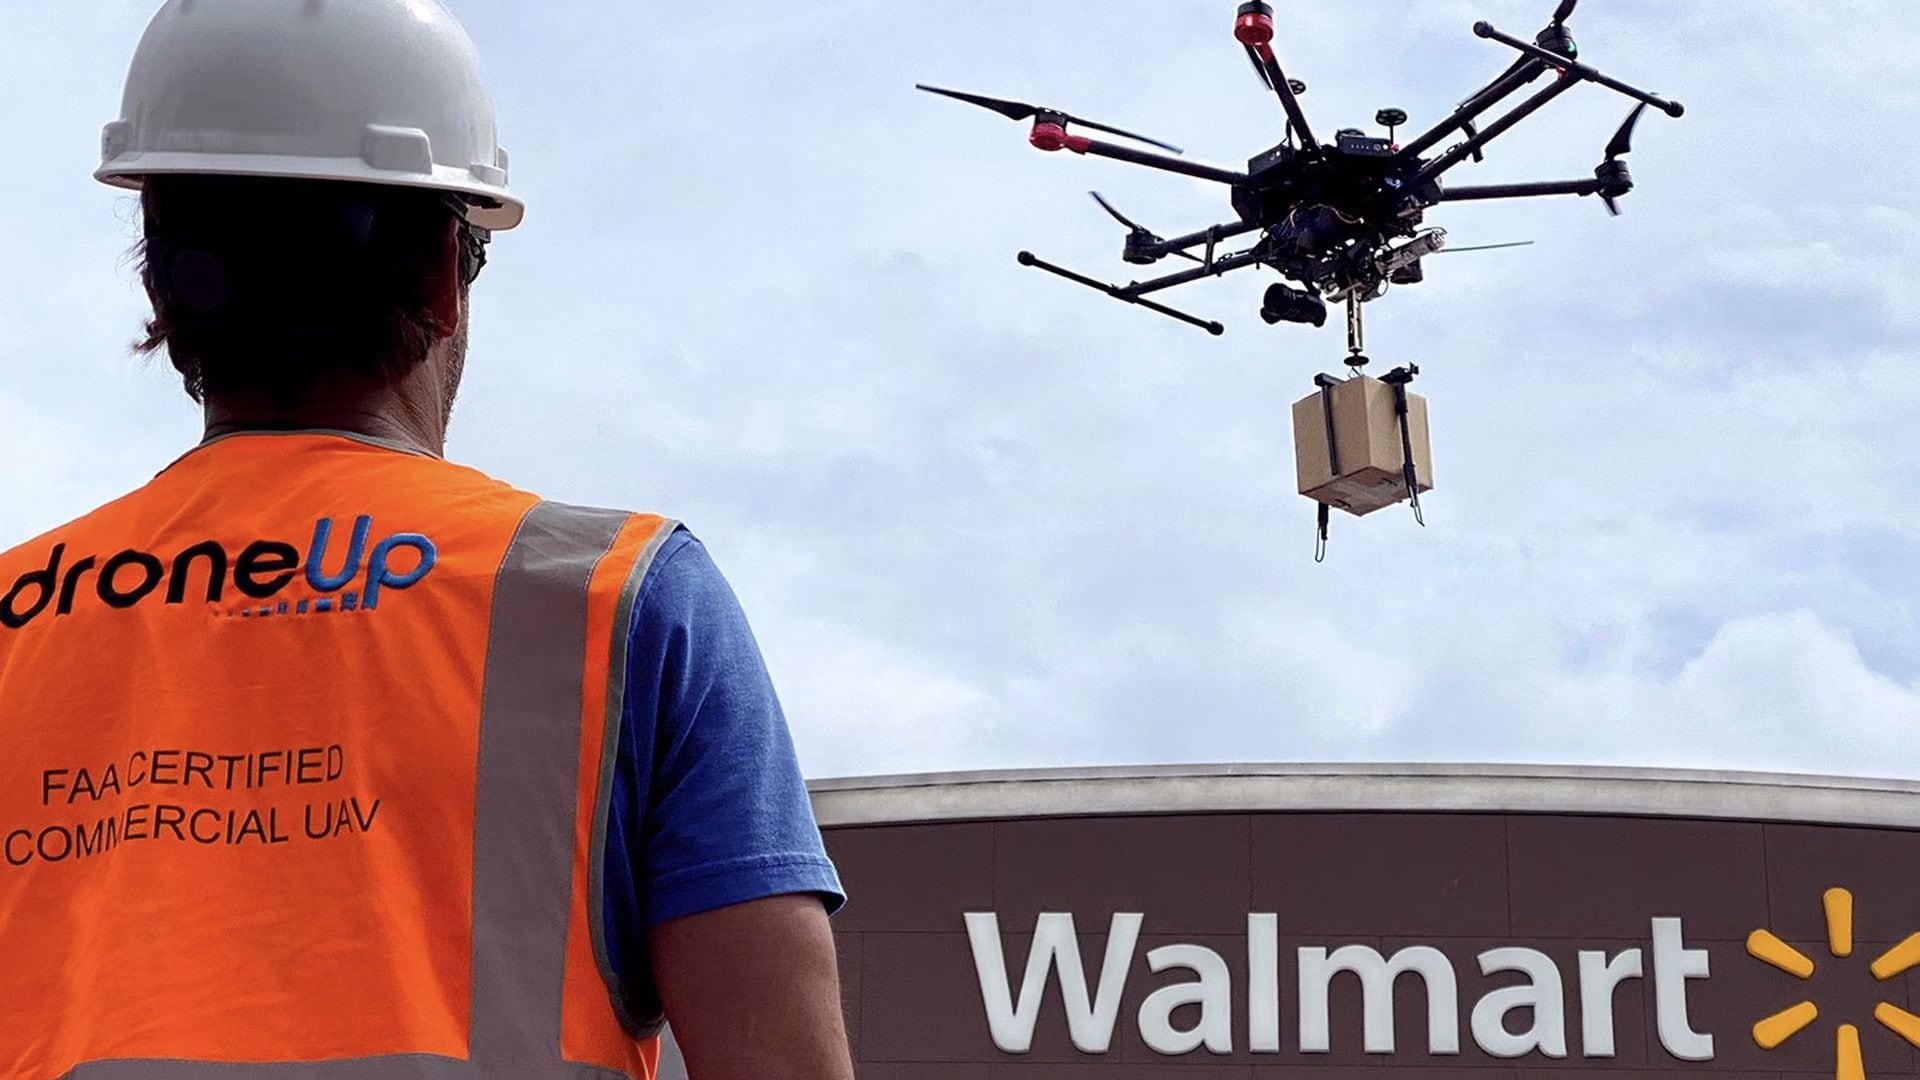 Walmart se prepara para transformar el panorama de las entregas a domicilio con la introducción de drones delivery en Estados Unidos. (Walmart)